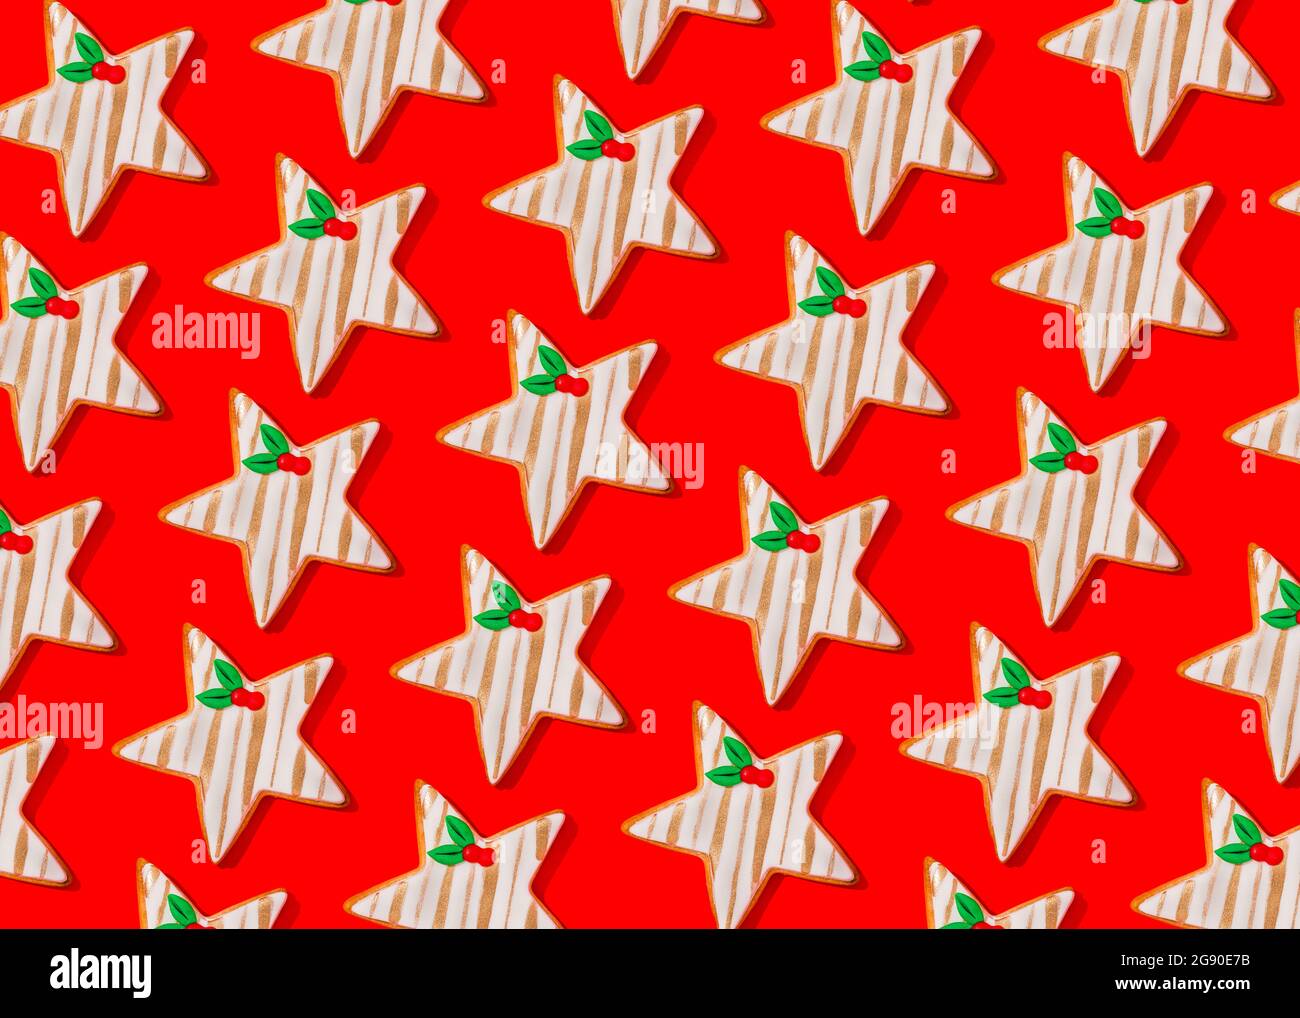 Motif de biscuits de Noël en forme d'étoiles posé sur fond rouge vif Banque D'Images